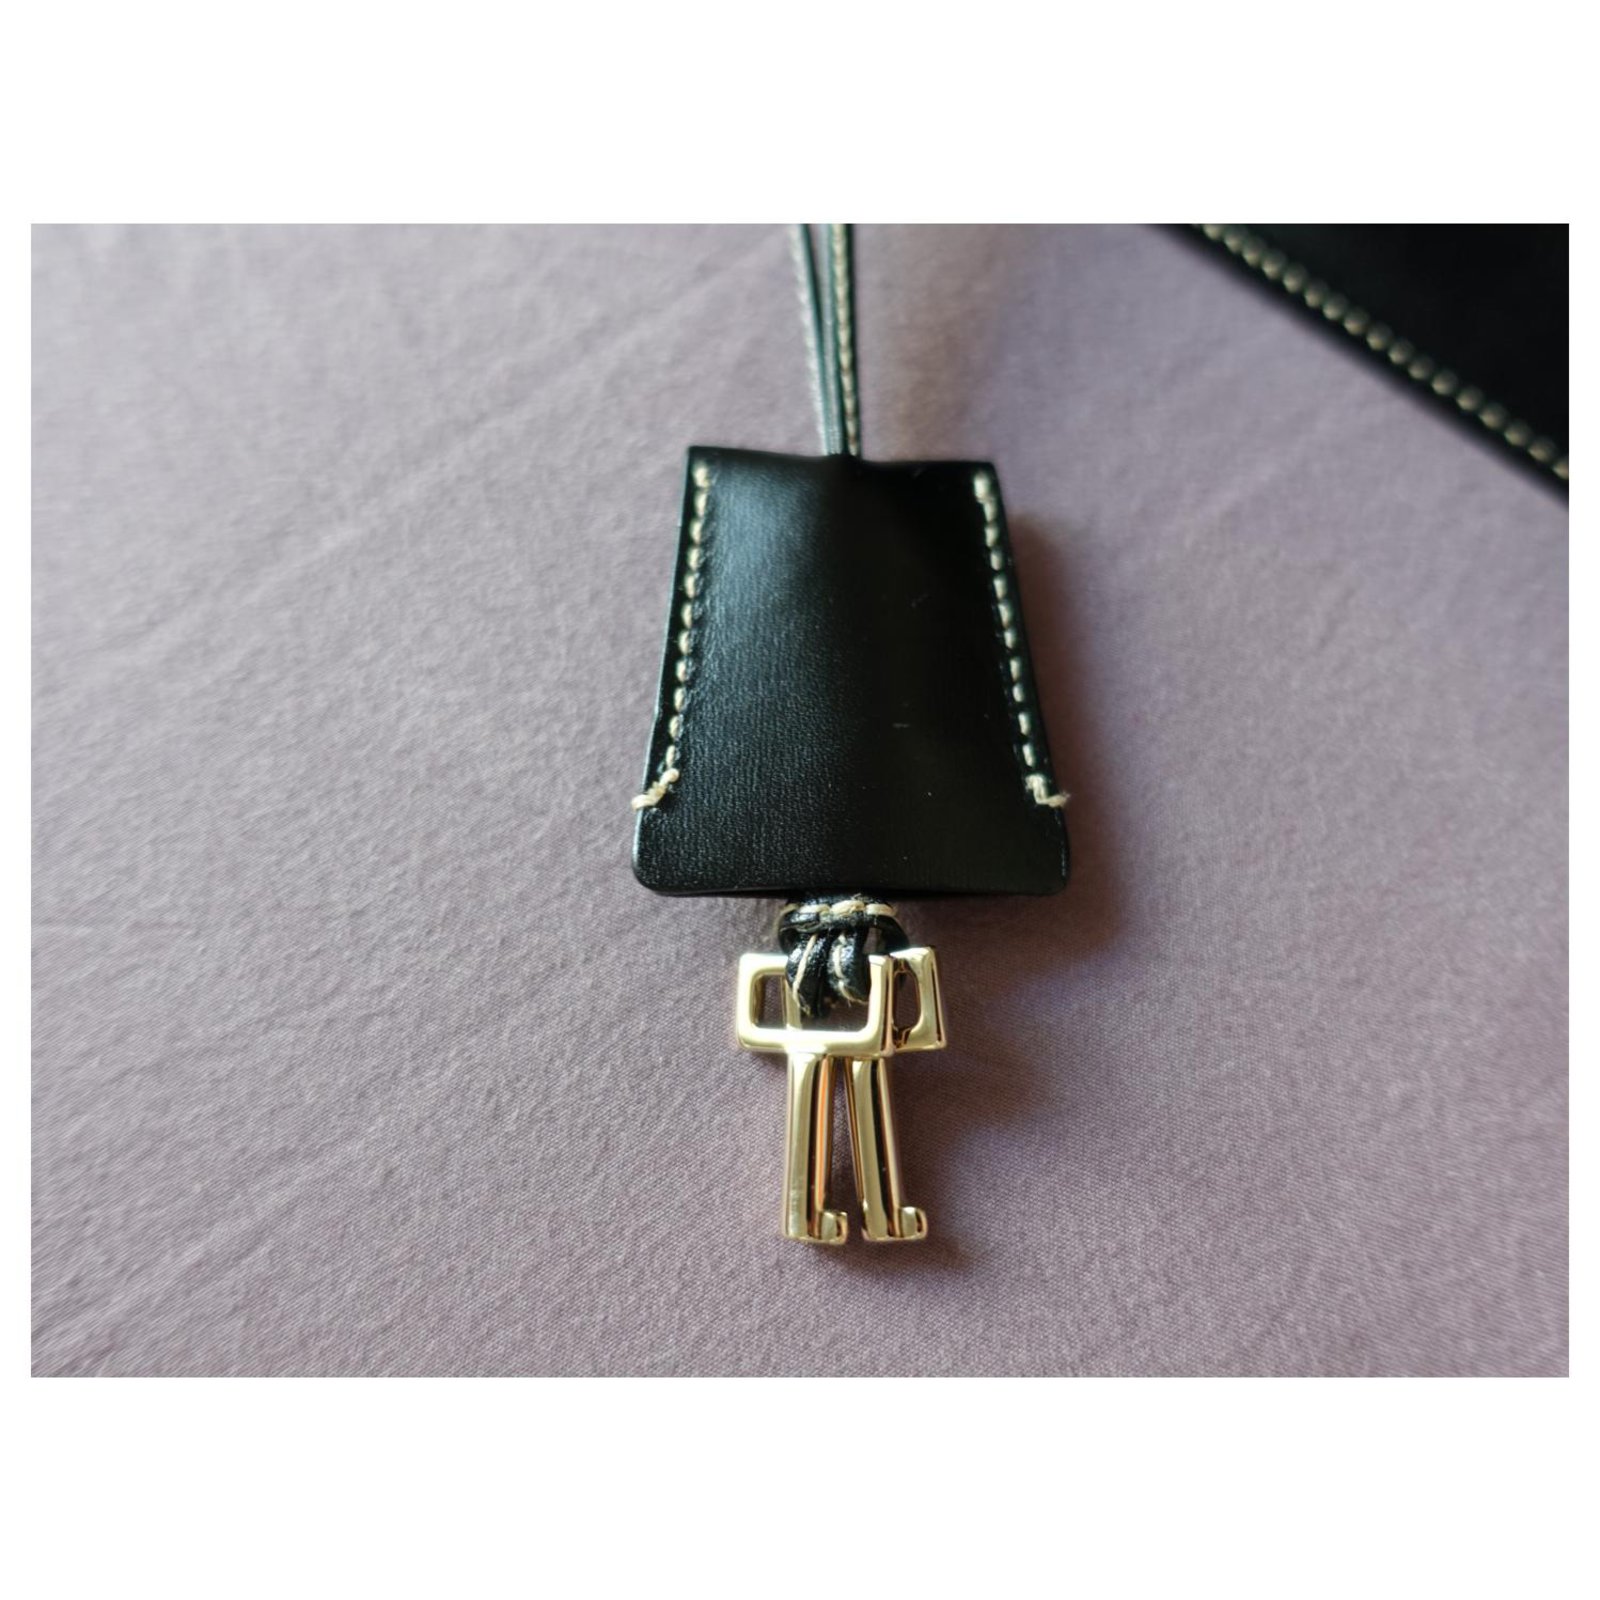 Gucci Vintage Lady Lock Shoulder Bag Black Leather ref.223934 - Joli Closet